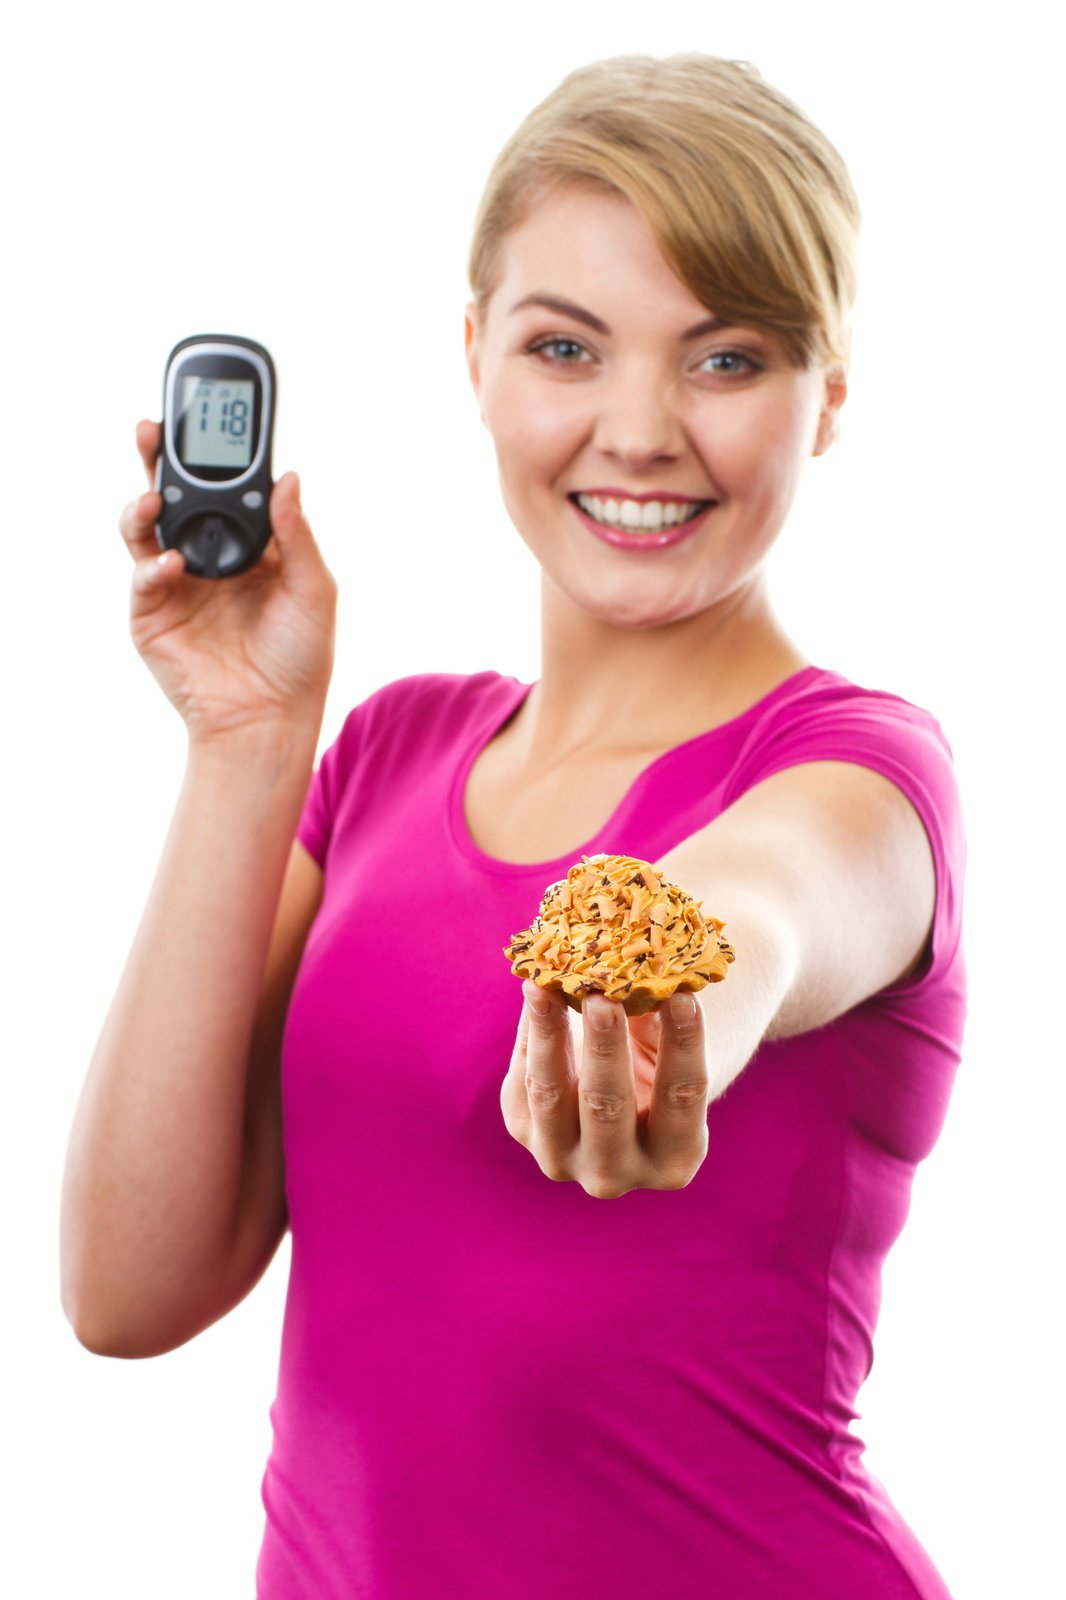 Diabetik: Na dovolenou si vezměte kromě inzulínu i svou dia stravu a kvalitní glukometr.